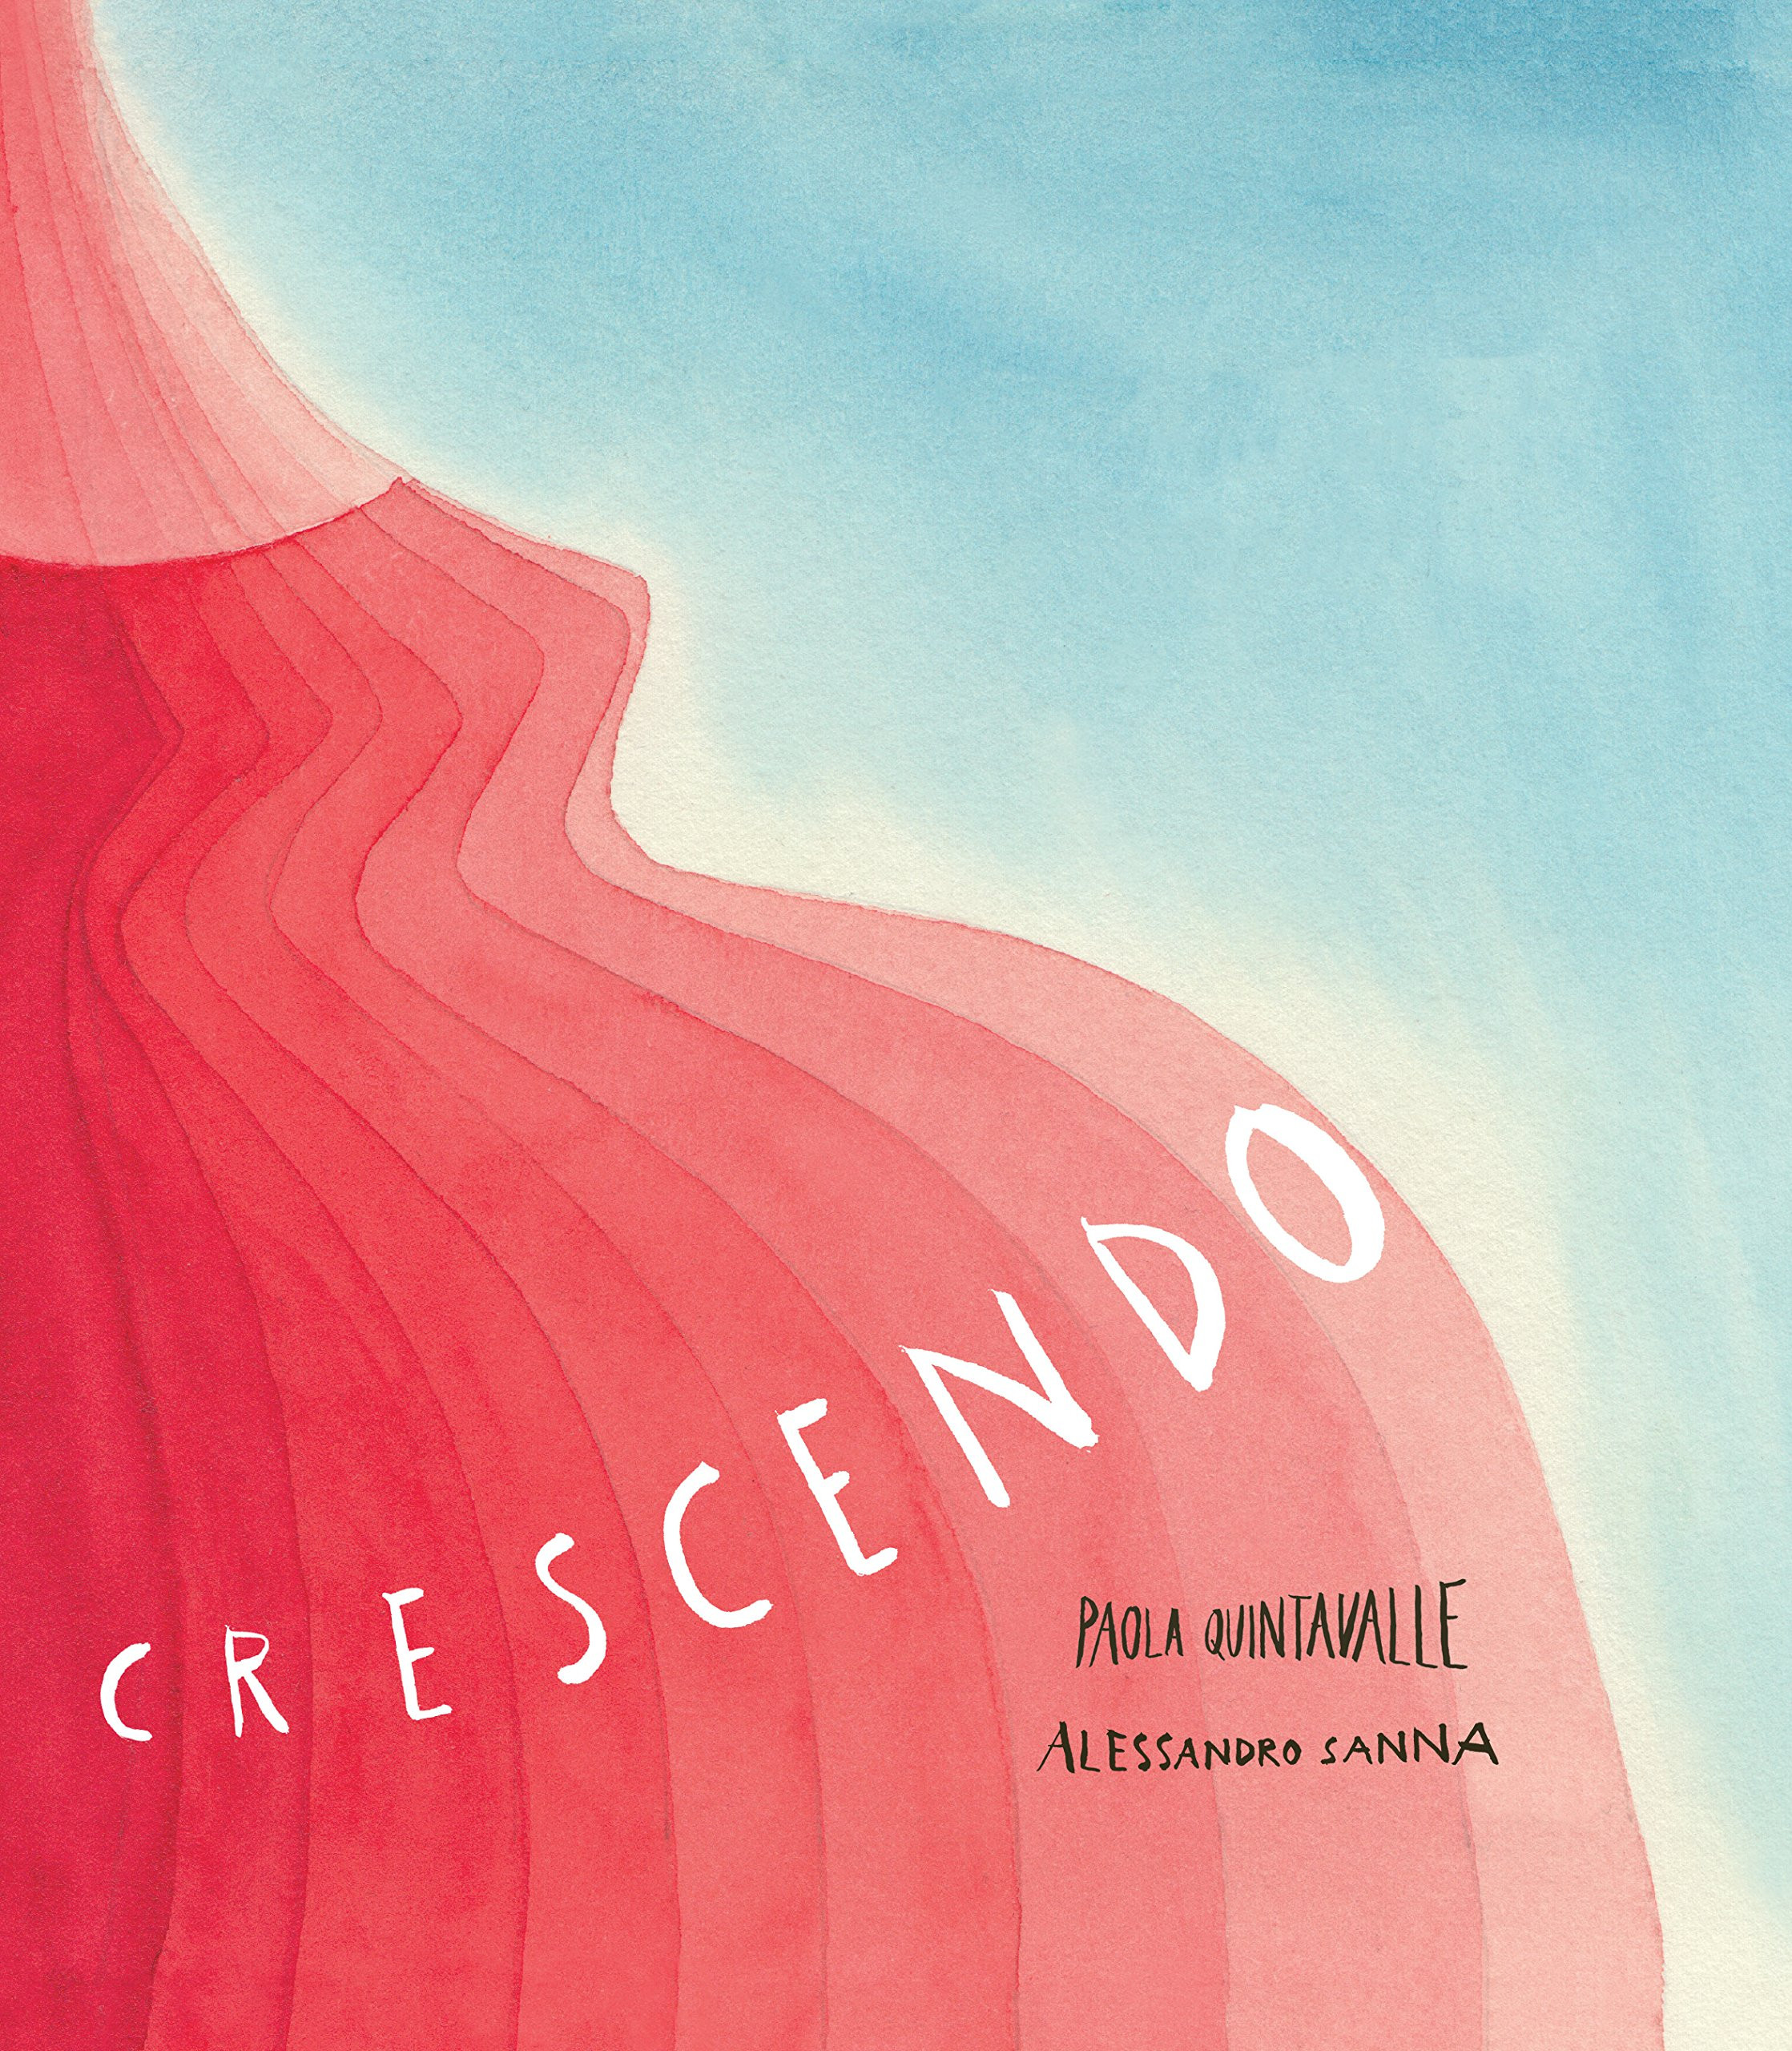 crescendo download free